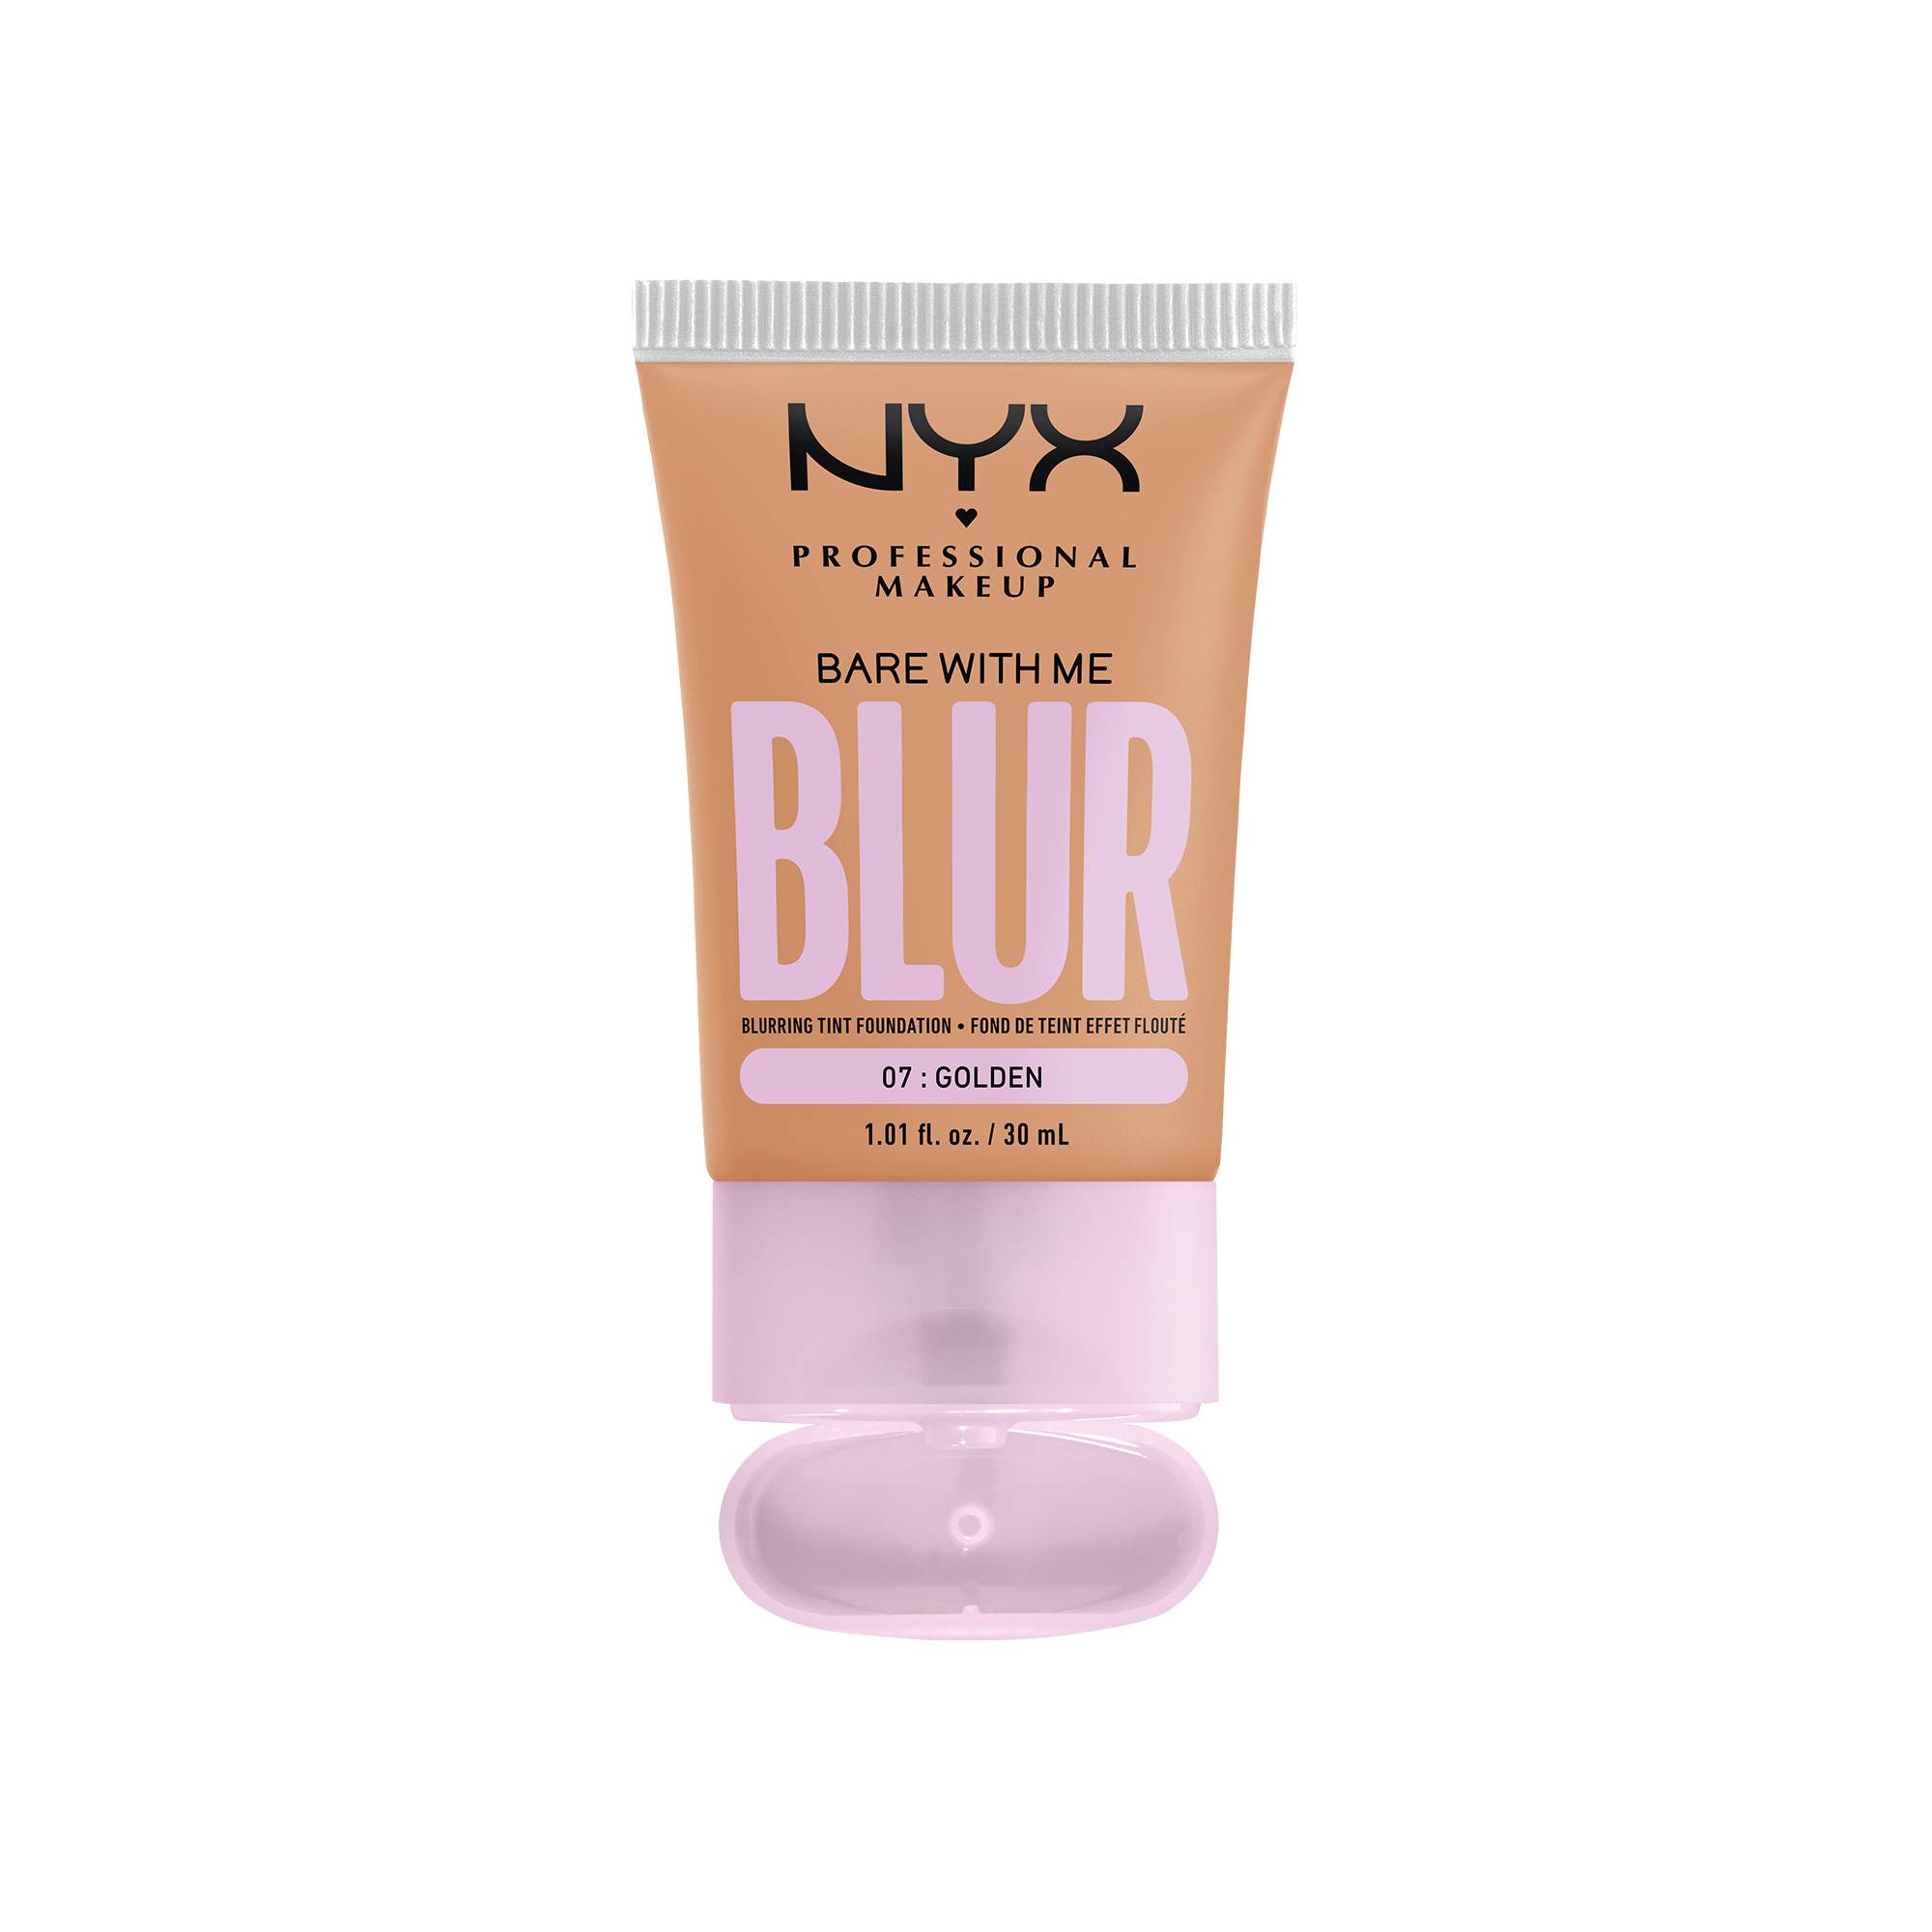 Fond de teint effet flouté Bare With Me Blur Golden de la marque NYX Professional Makeup - 1